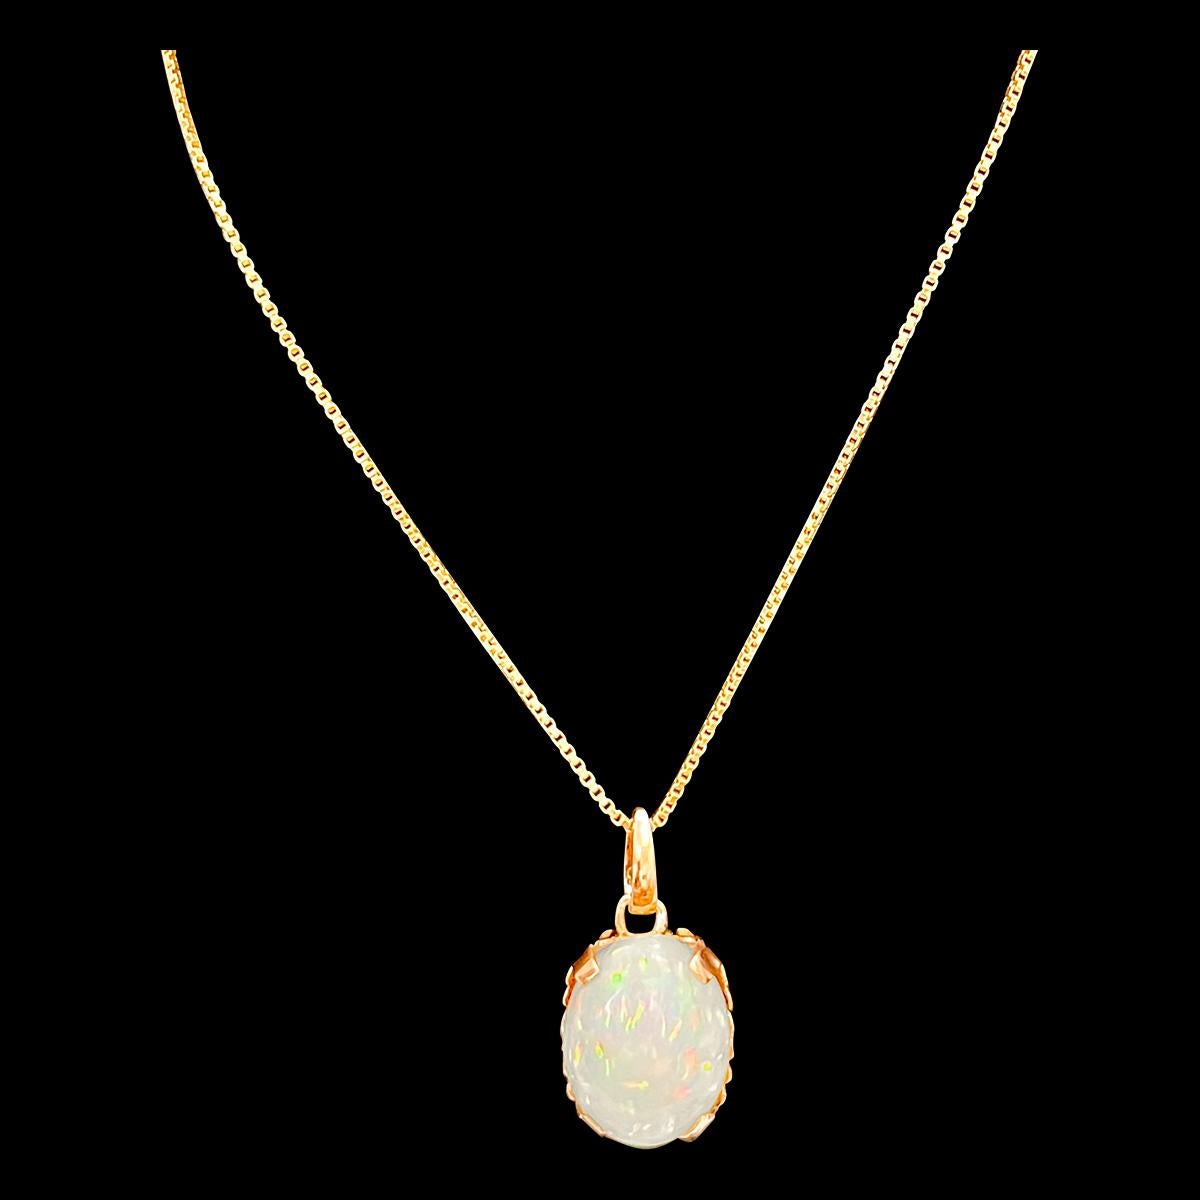 9 Carat Oval Ethiopian Opal Pendant / Necklace 18 Karat + 18 Kt Gold Chain 14